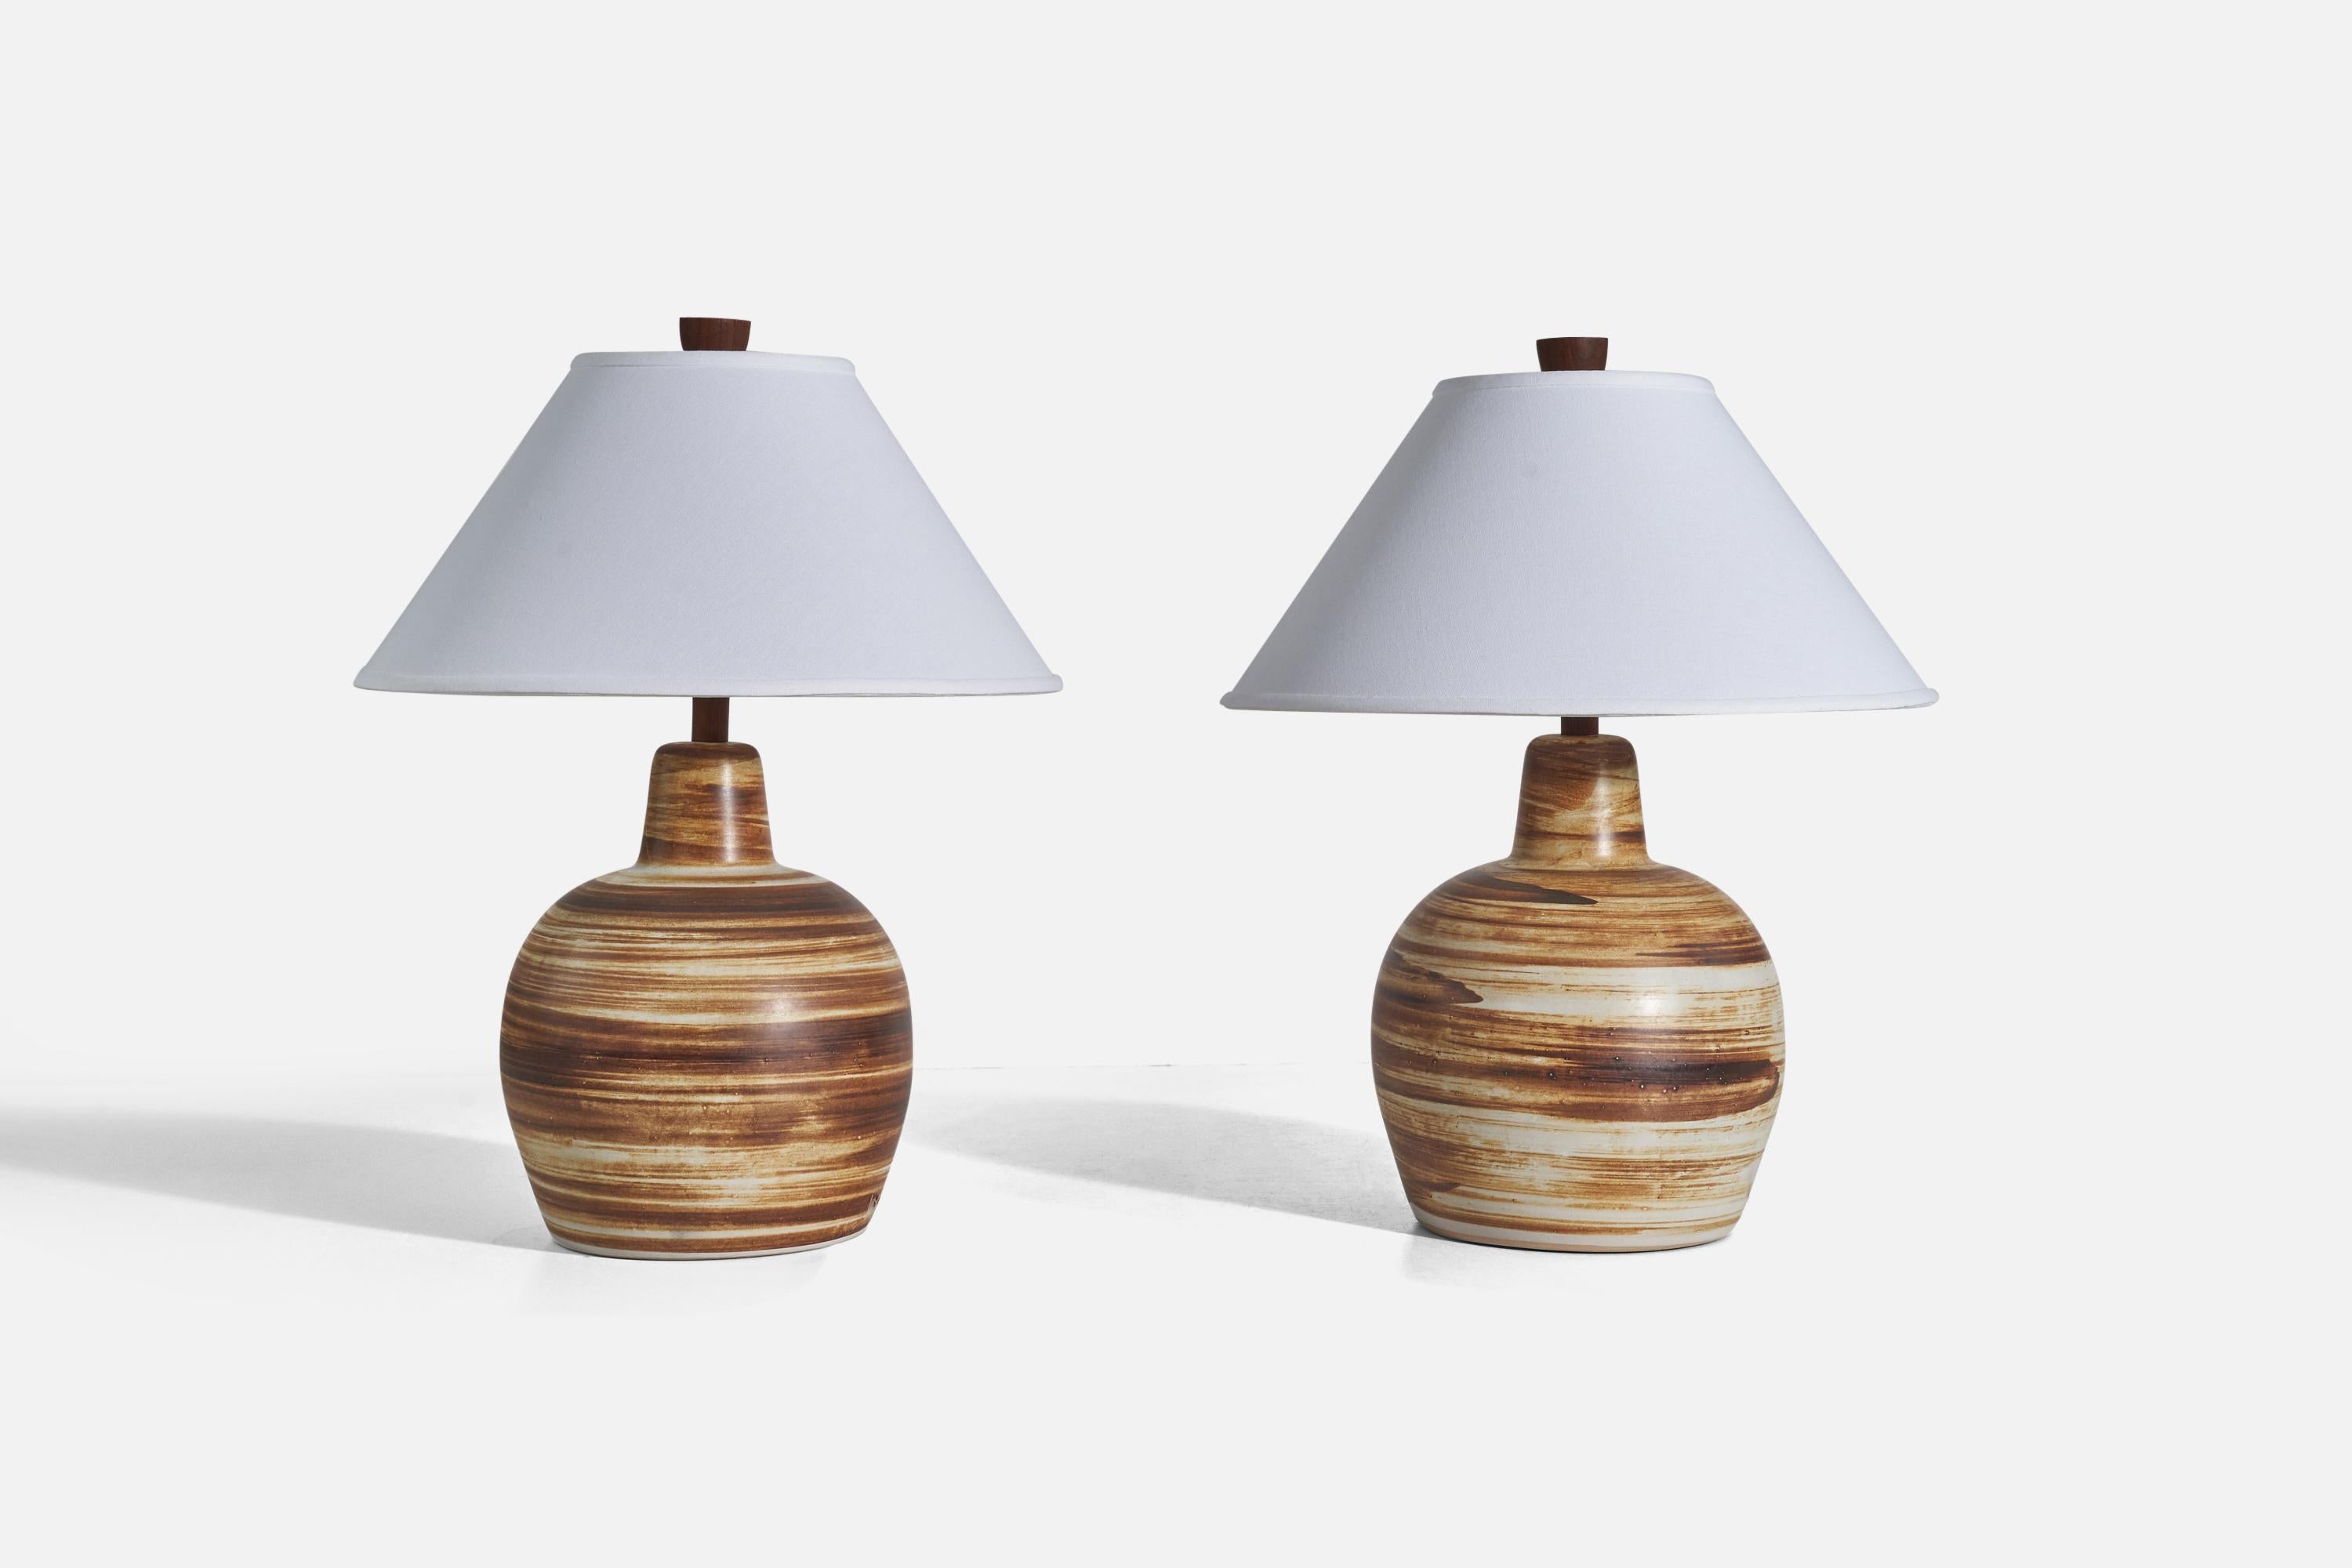 Paire de lampes de table en céramique brune et blanche et en noyer, conçues par Jane et Gordon Martz et produites par Marshall Studios, Indianapolis, années 1950.

Vendu sans abat-jour
Dimensions de la lampe (pouces) : 15.56 x 9.5 x 9.5 (Hauteur x